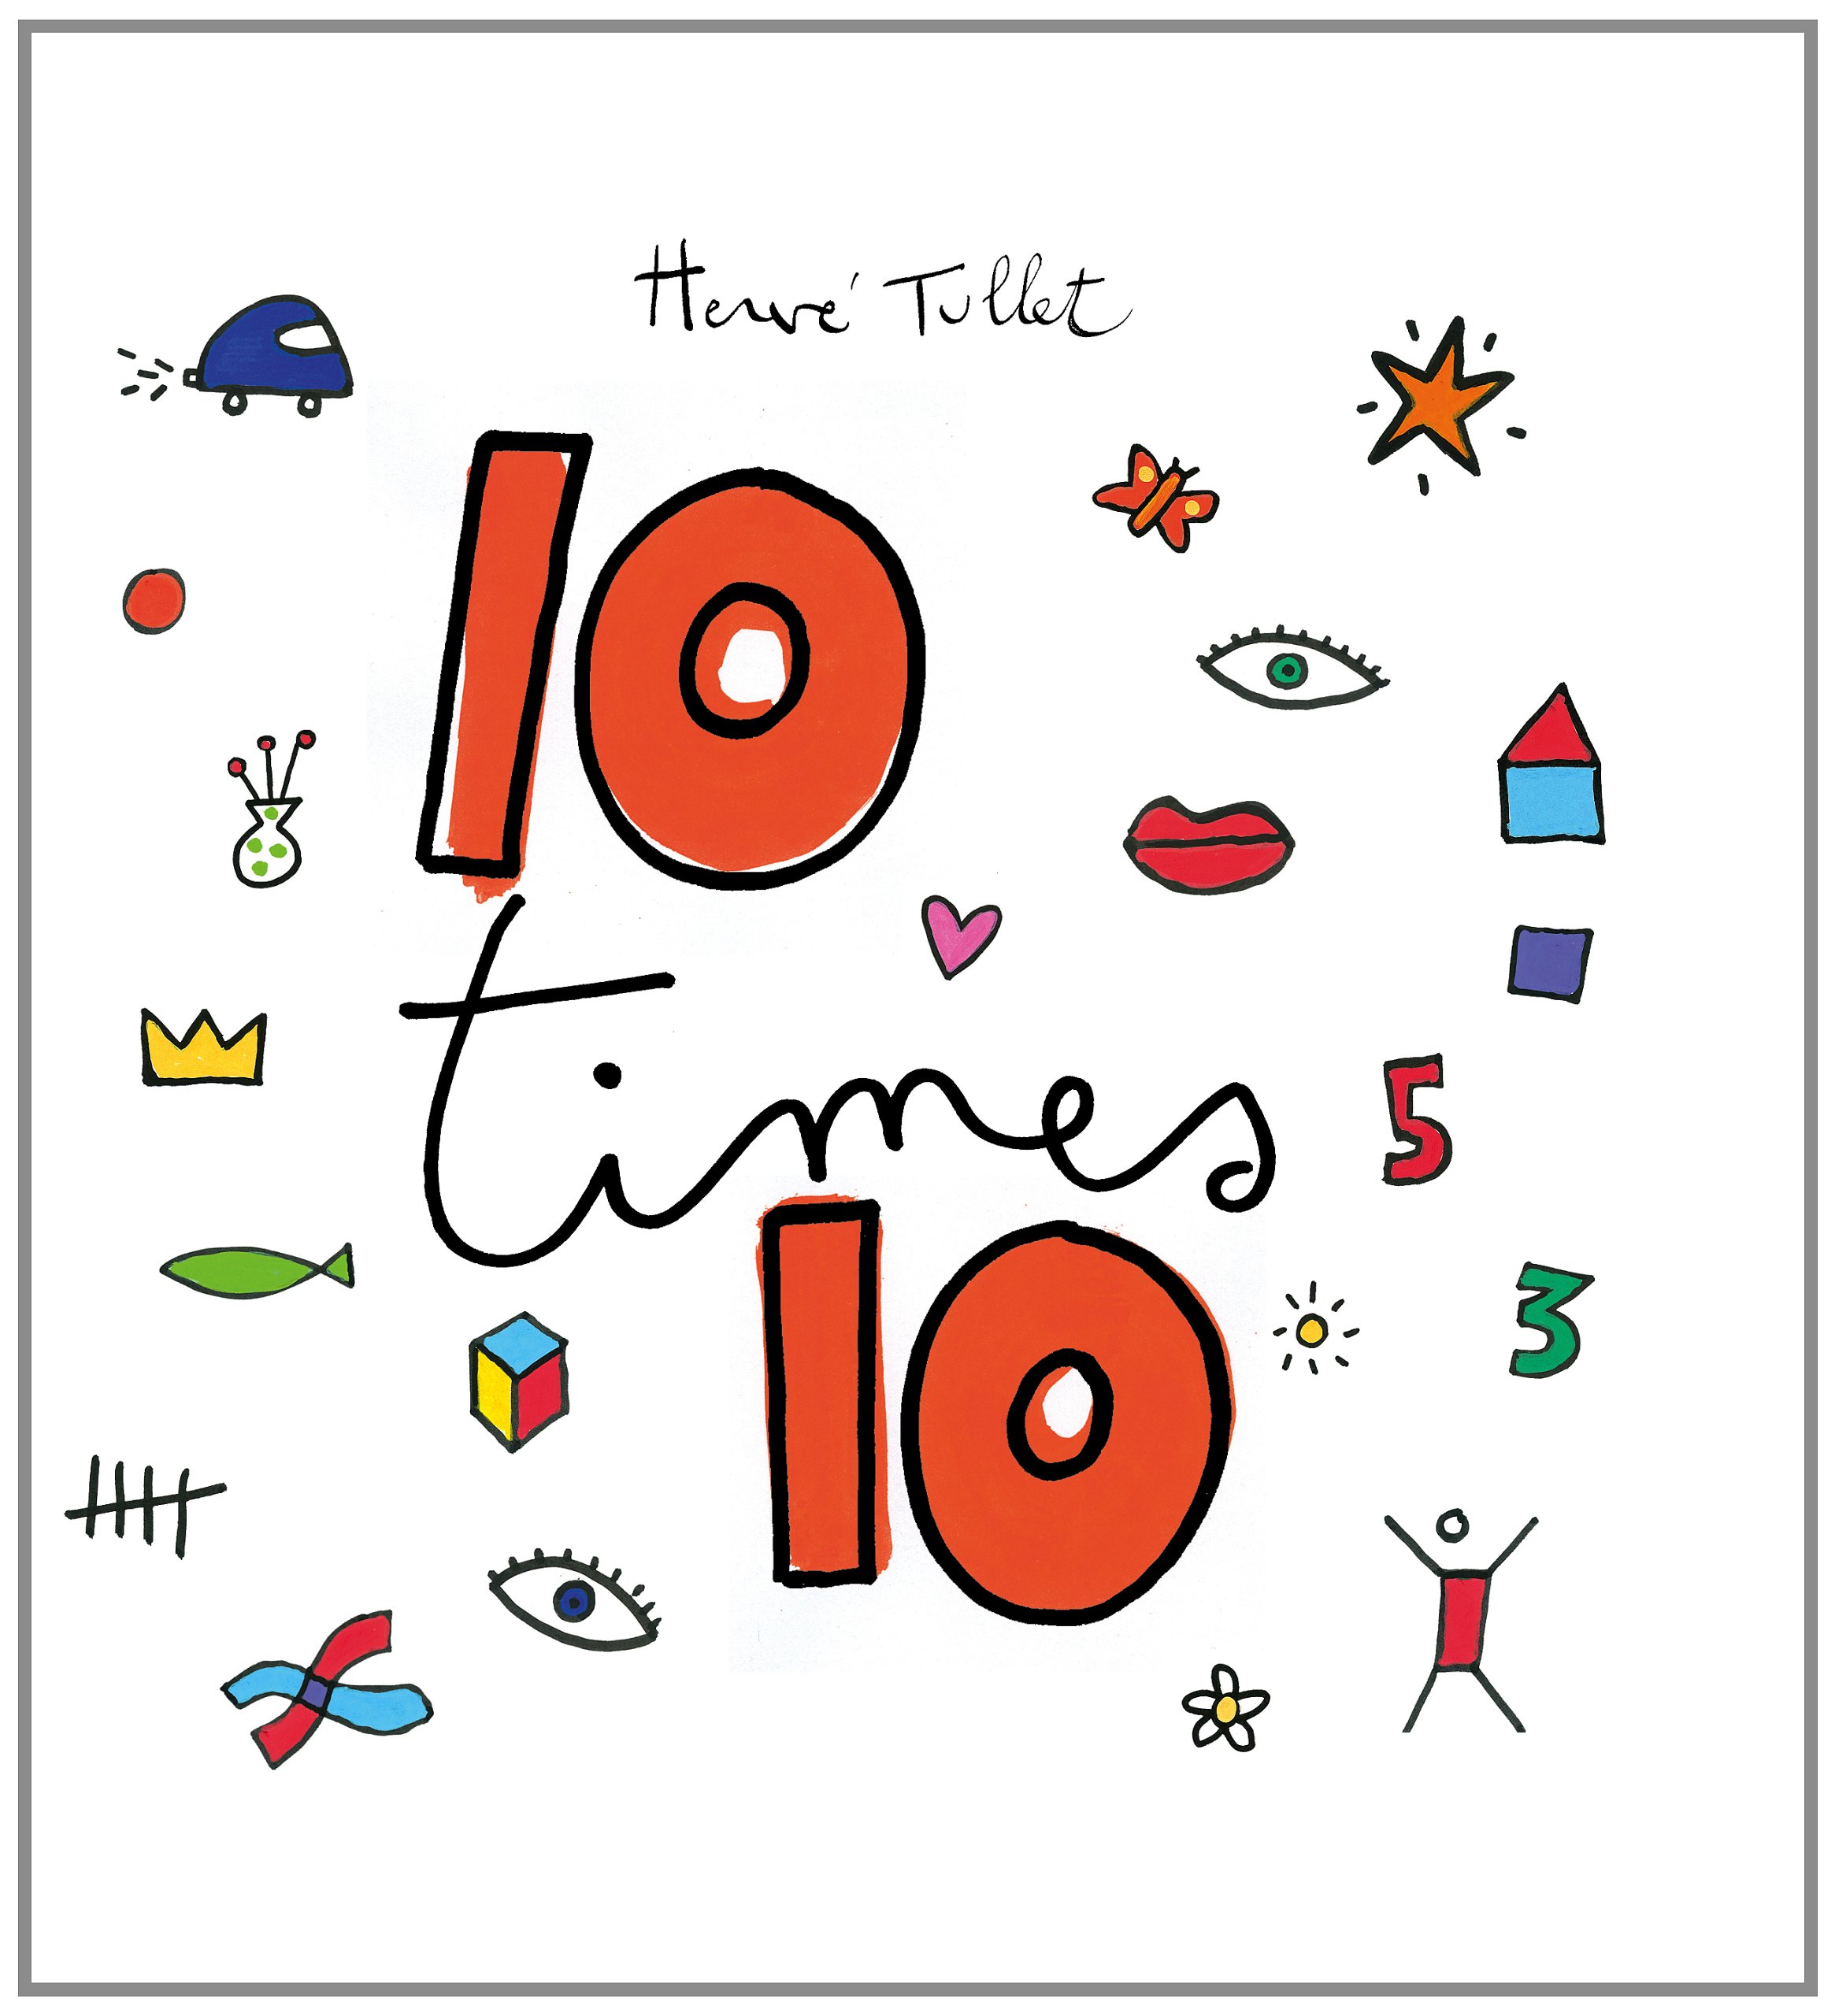 10 times 10 - Herve Tullet